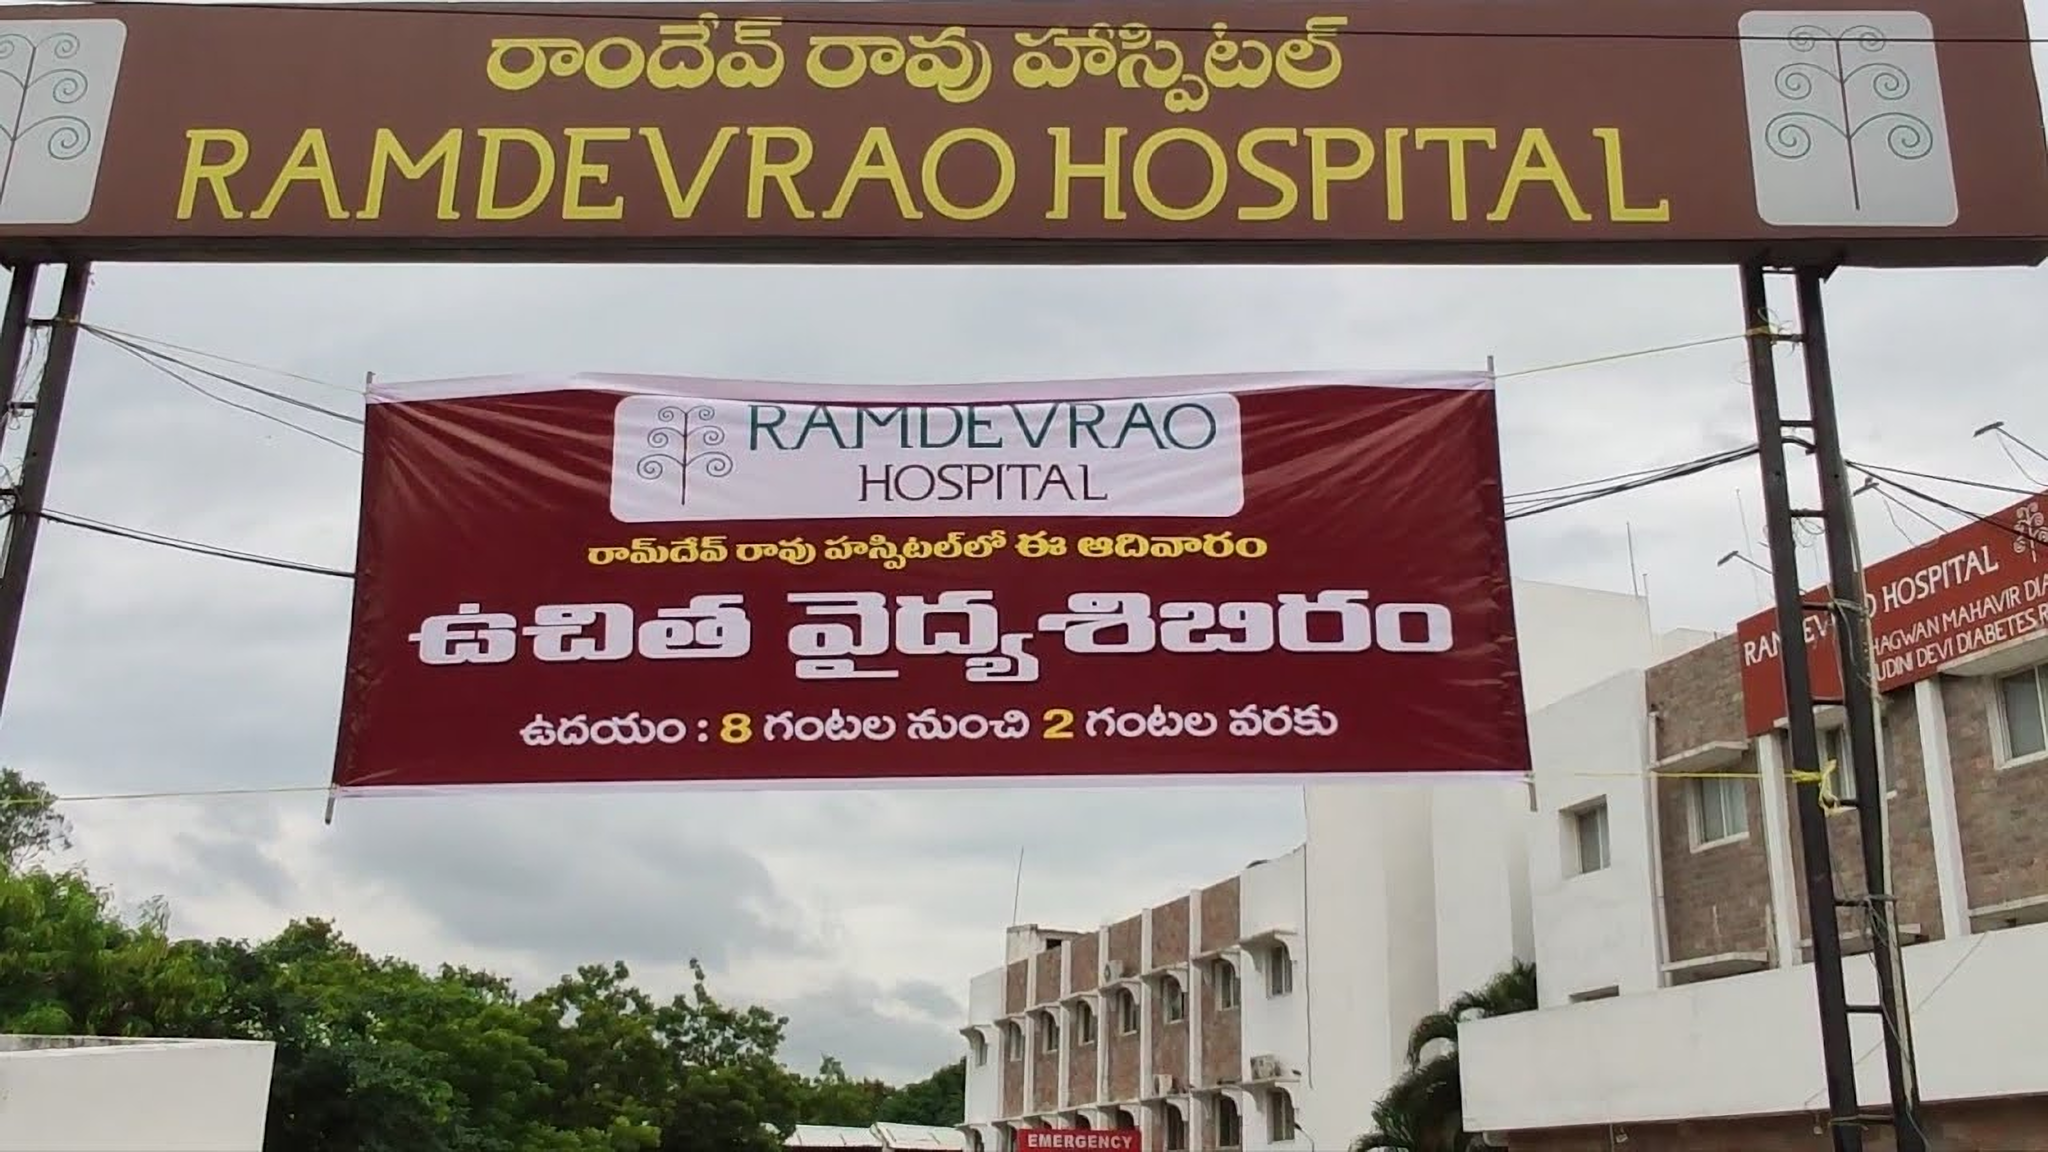 Ramdevrao Hospital